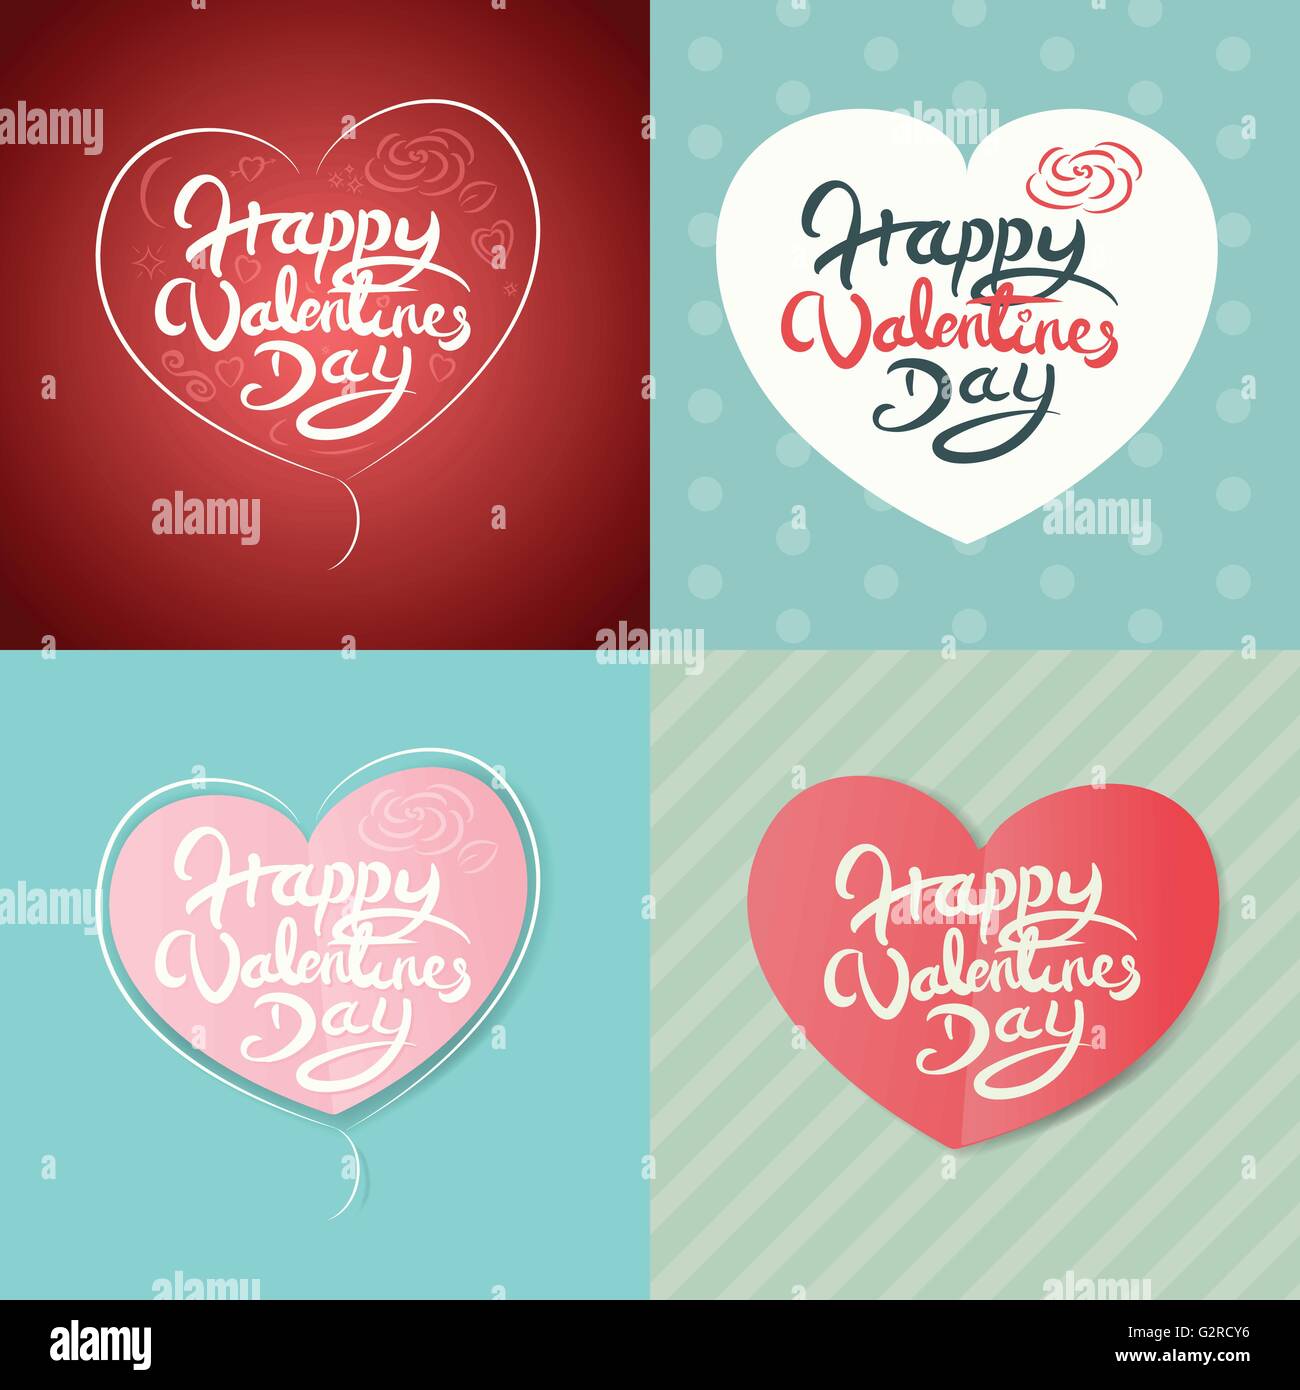 Vier Happy Valentines Day handgezeichnete Schriftzug Vektor-Design Stock Vektor